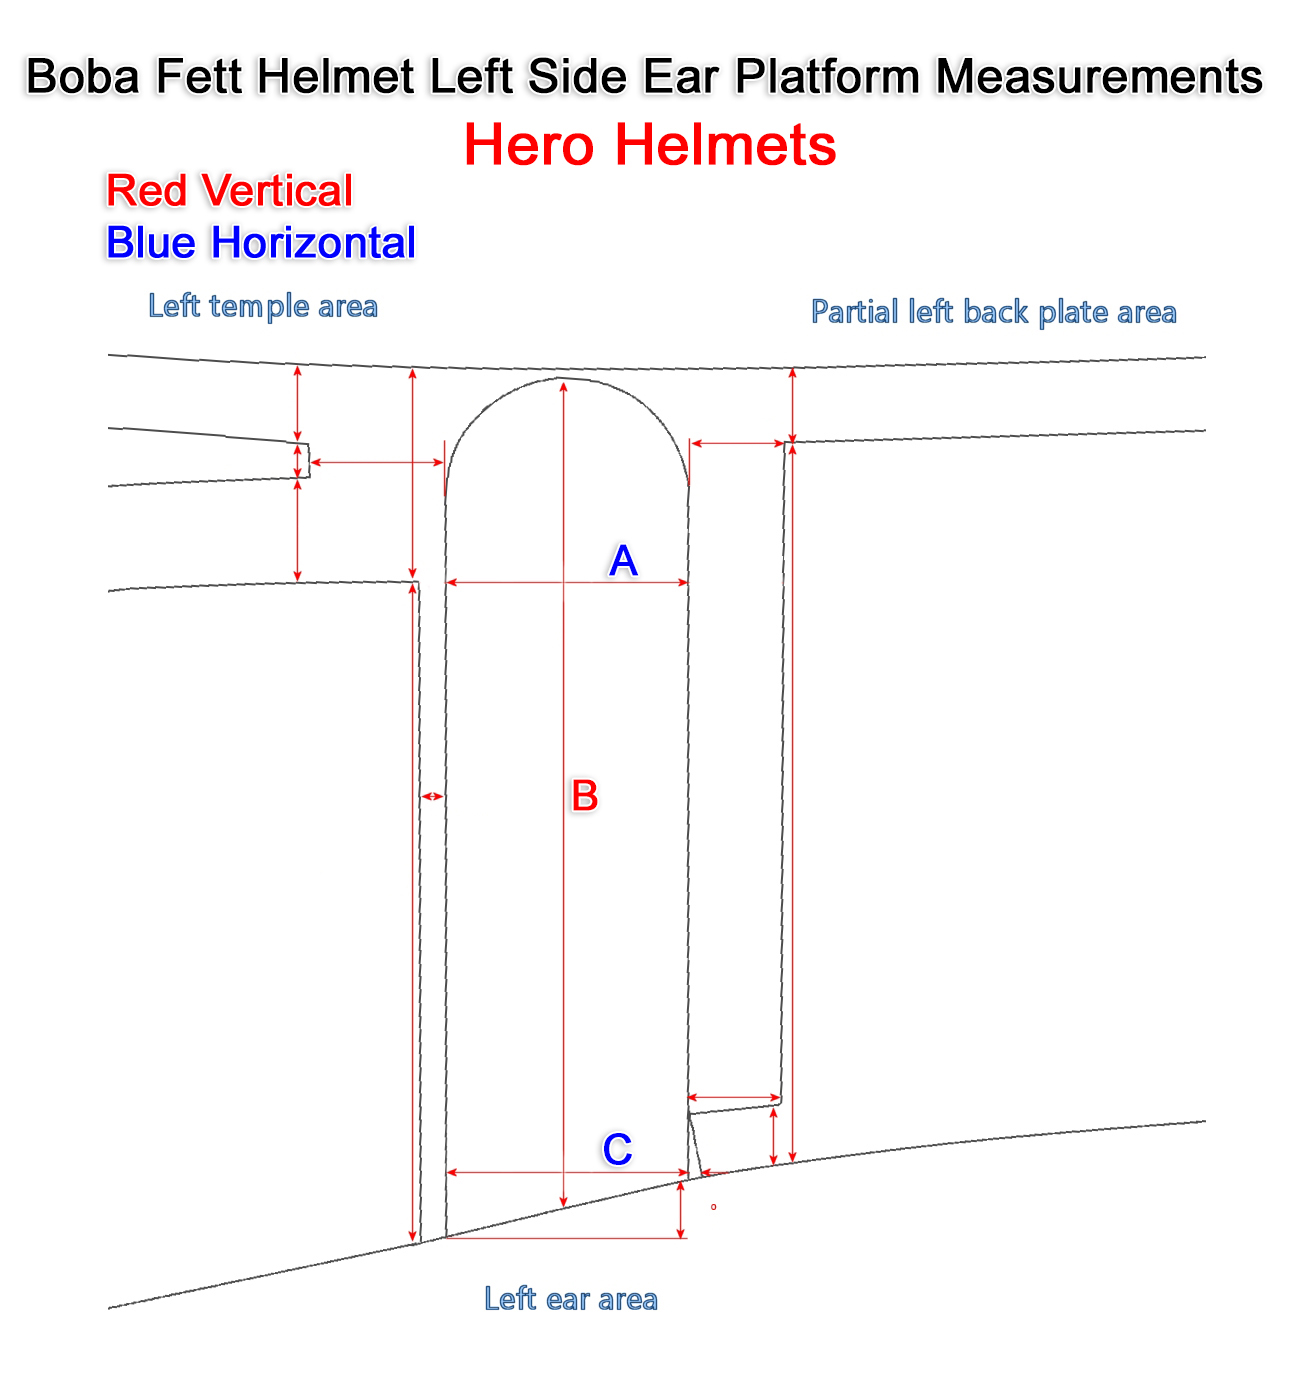 Boba Fett Hero Helmet Left Side Measurements.jpg